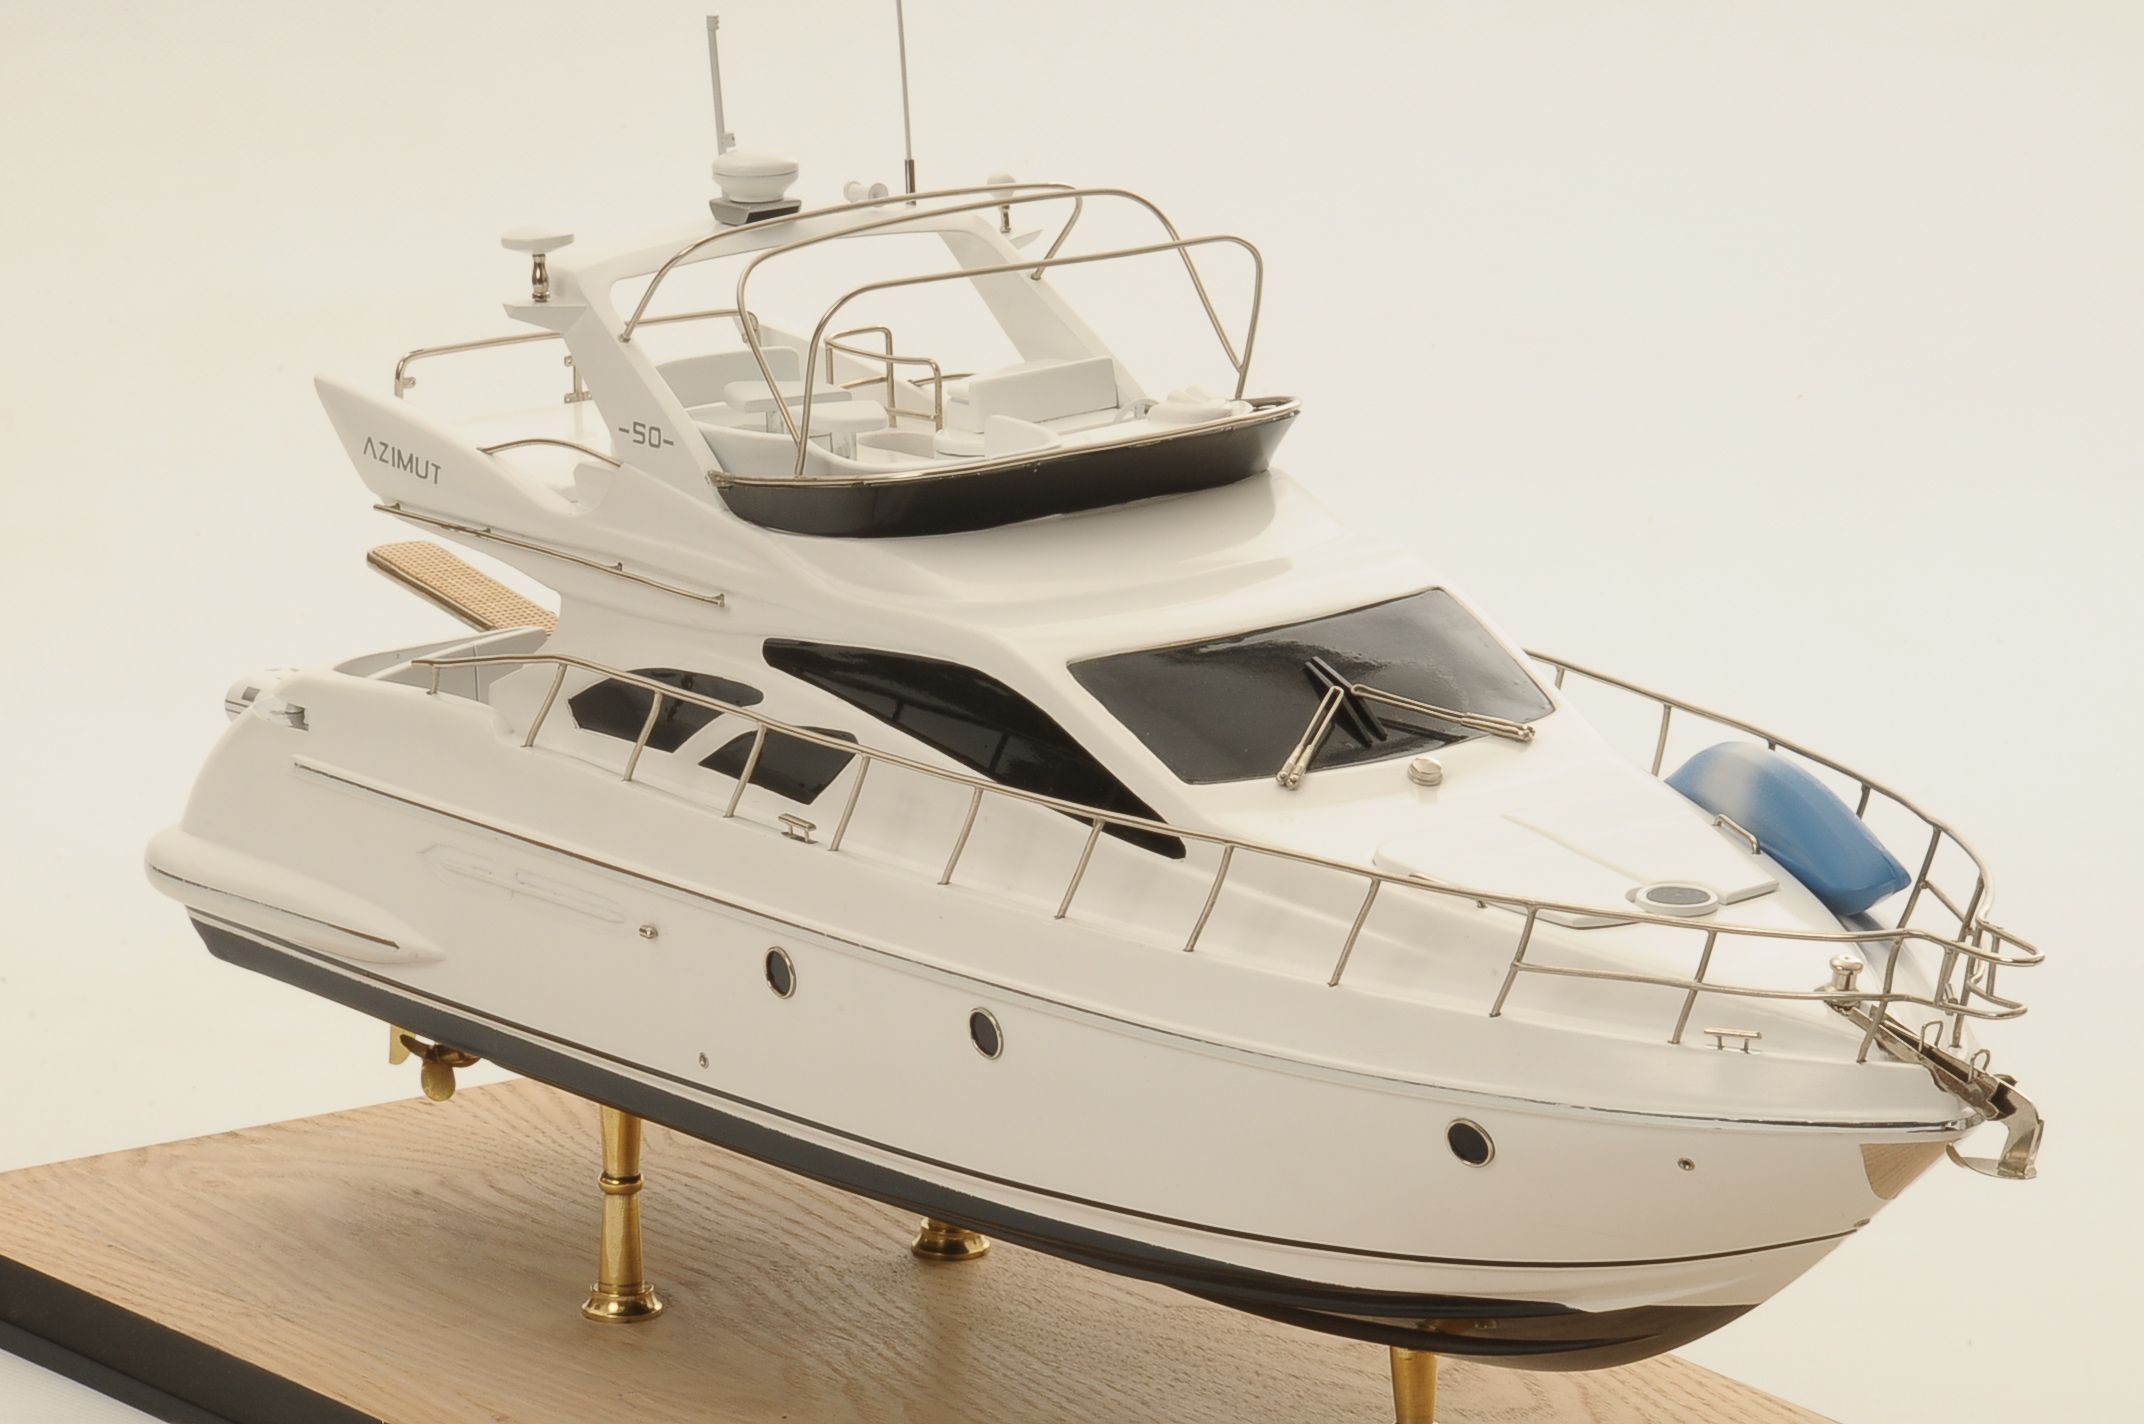 Maquette bateau - Azimut 50